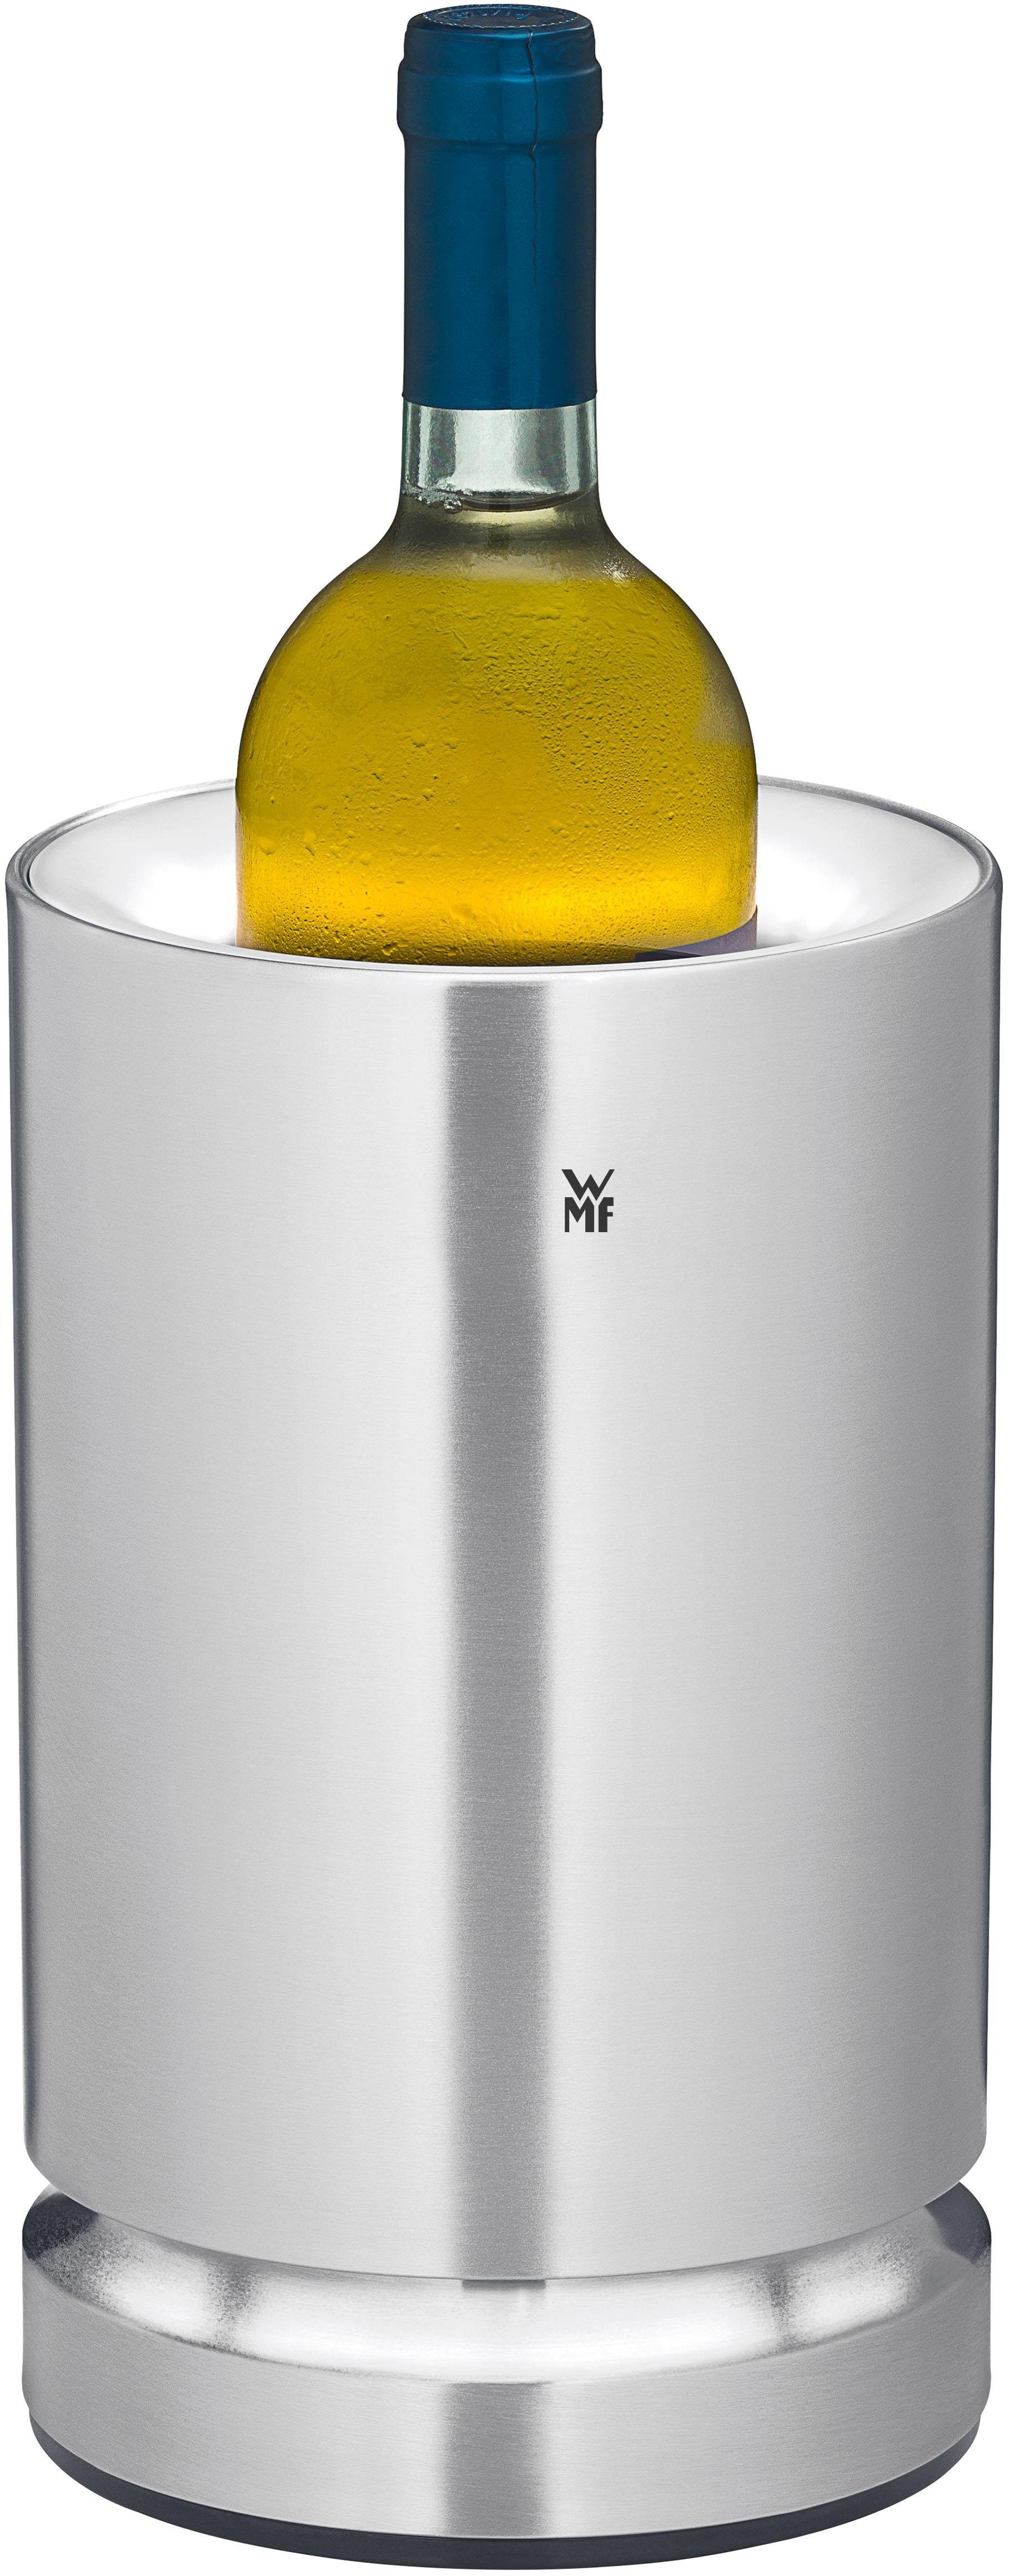 Laden Akkus LED-Lichtring, dekorativem Weinkühler zum mit Ambient, WMF der Elektrischer USB-Steckverbindung